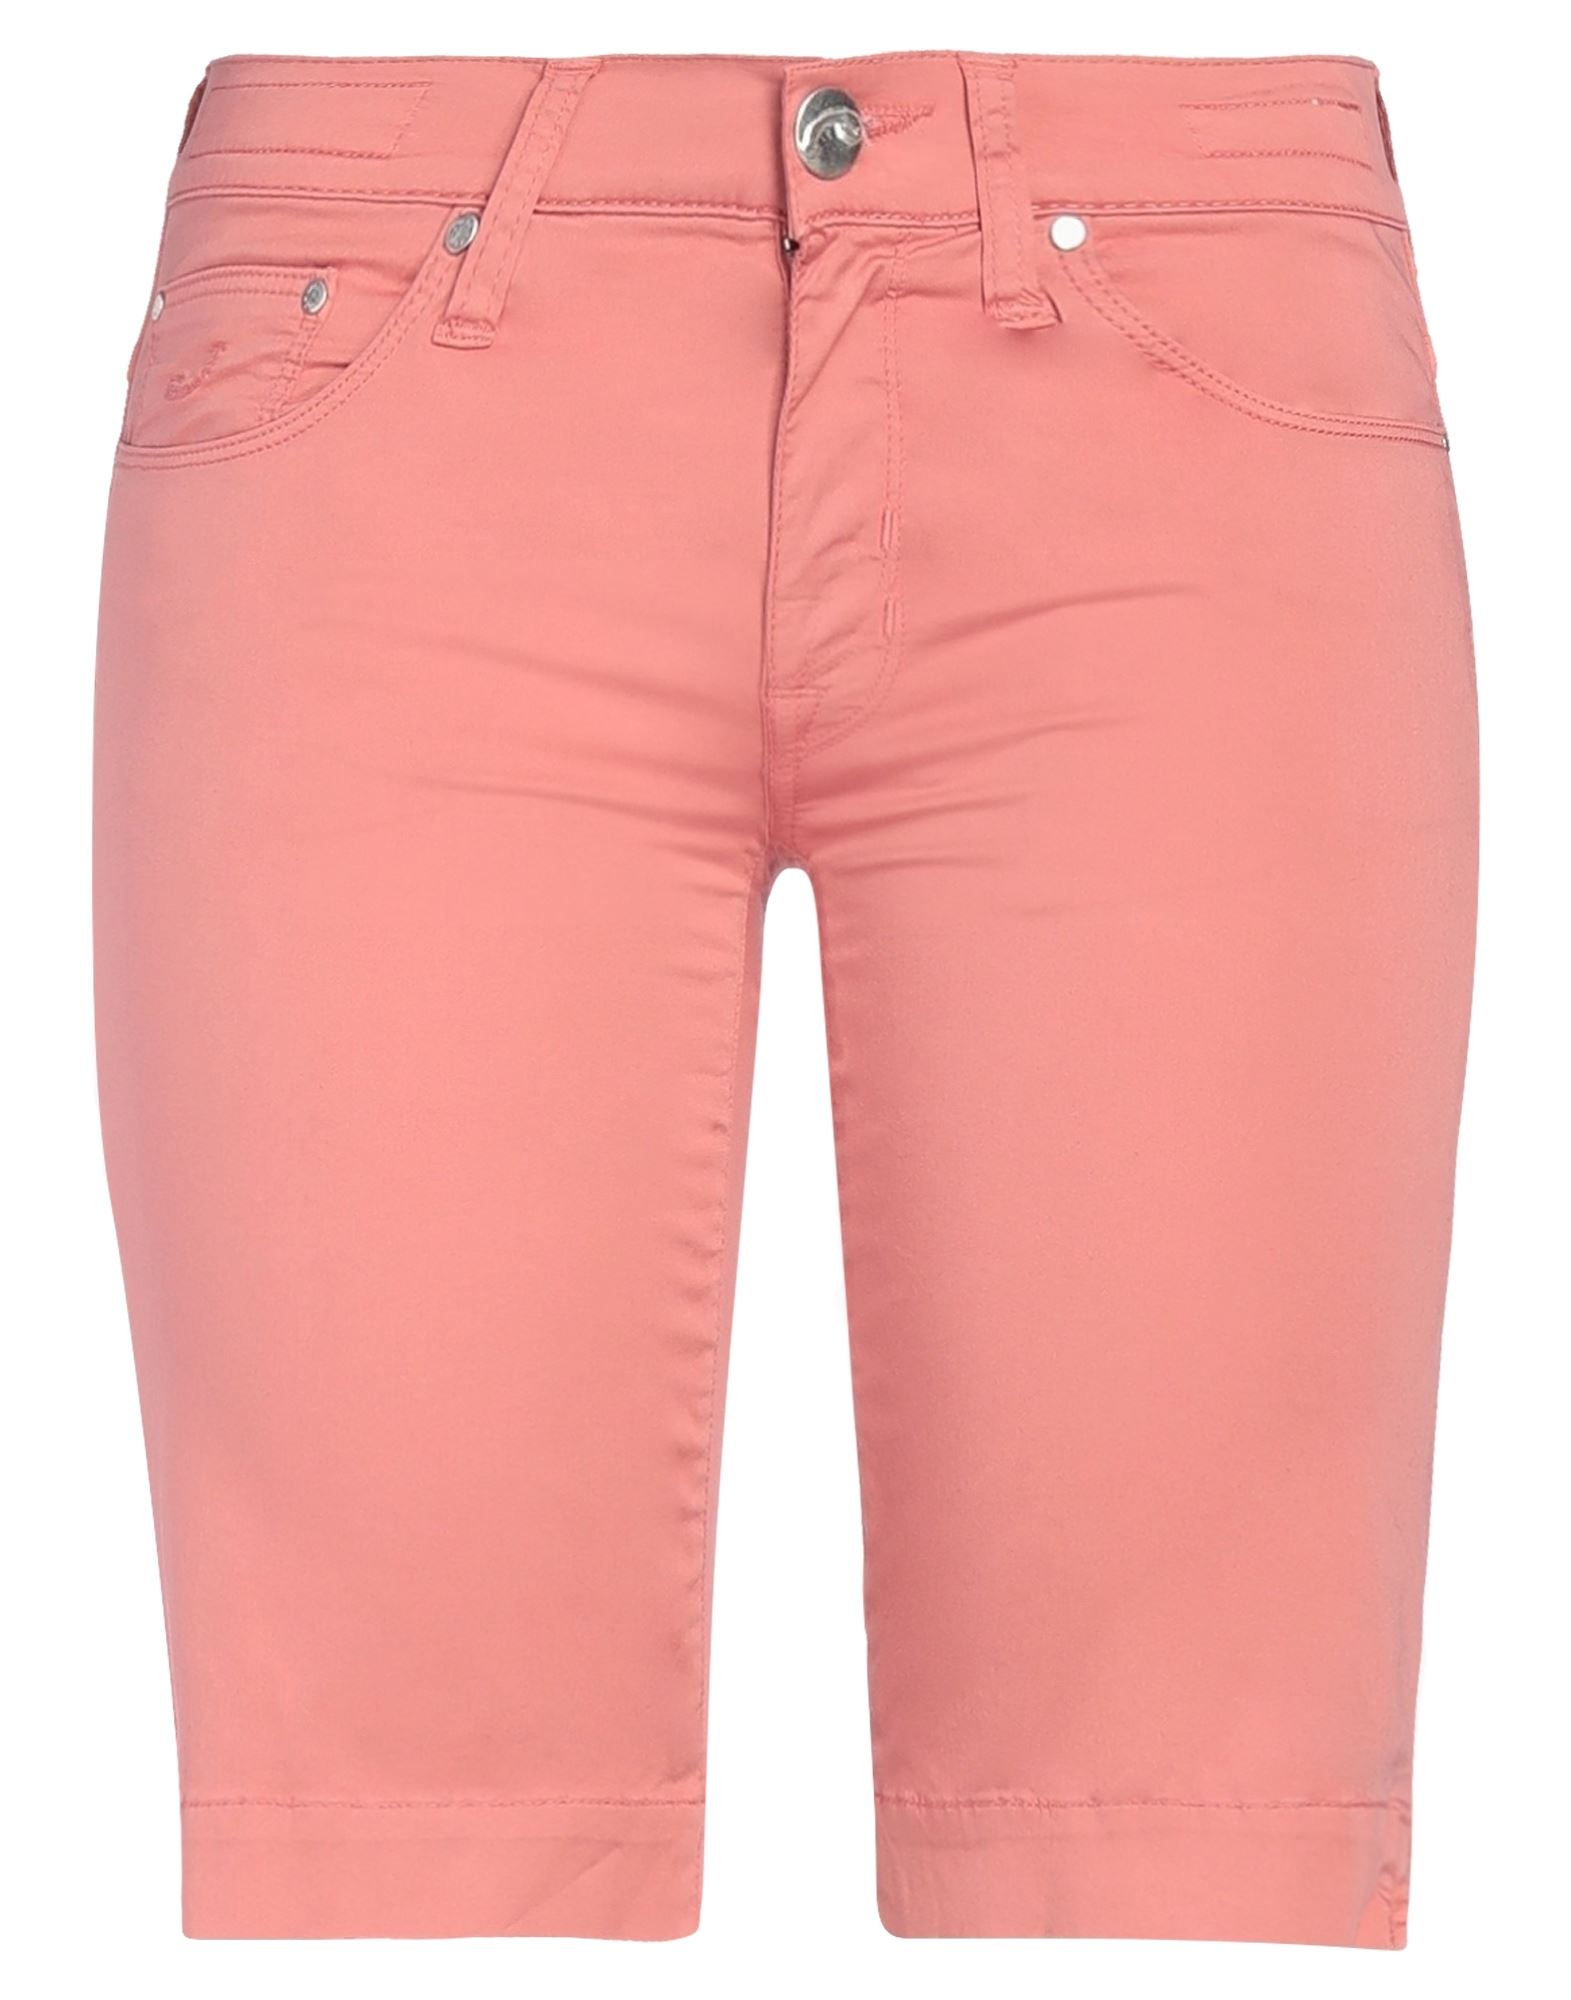 Jacob Cohёn Woman Shorts & Bermuda Shorts Salmon Pink Size 26 Cotton, Elastane